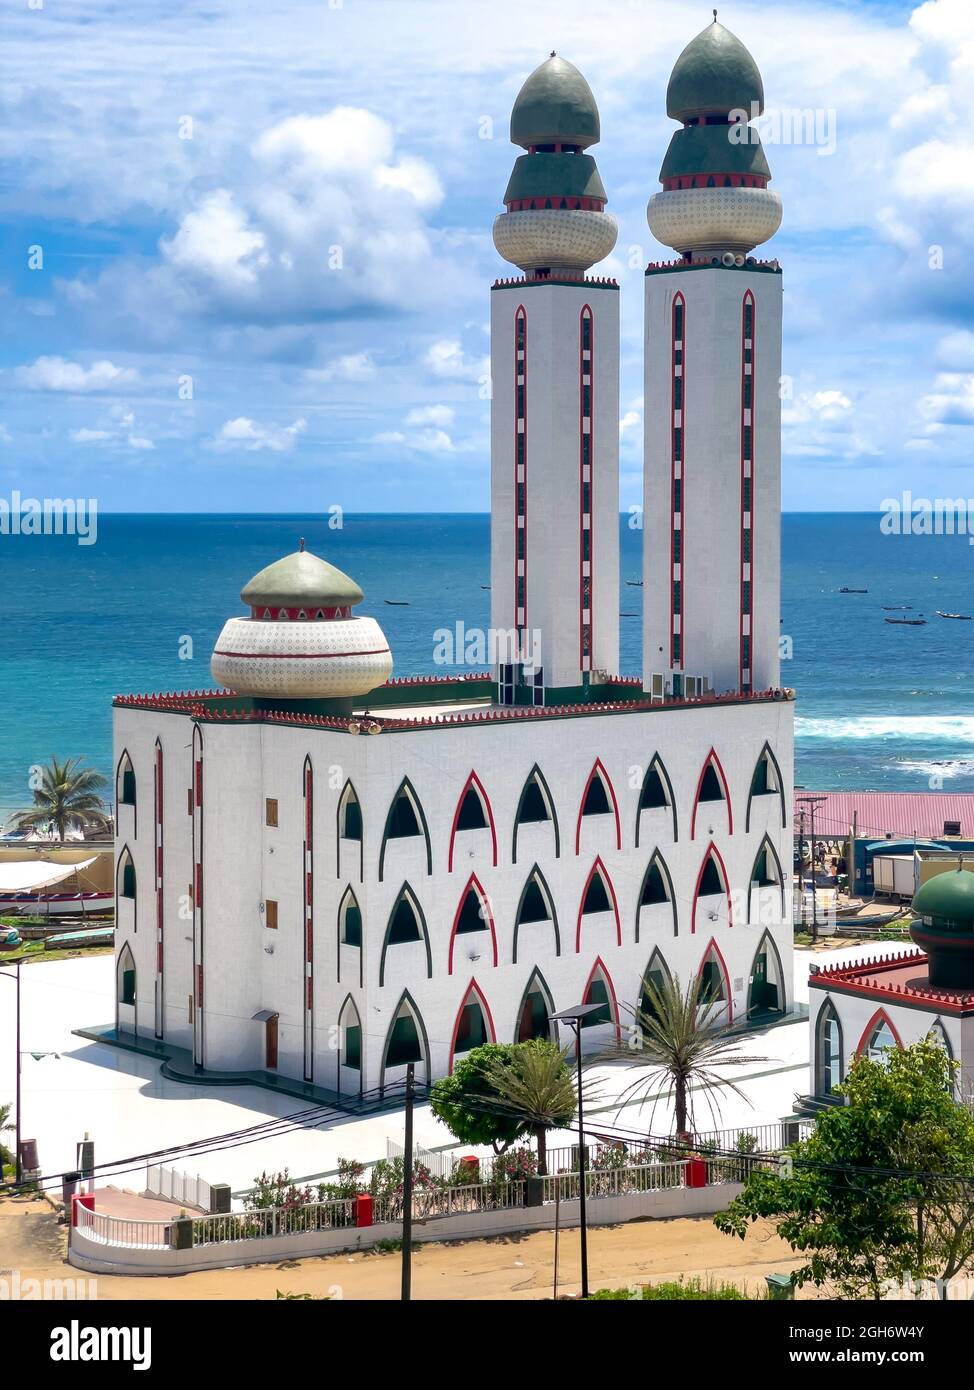 La mosquée de divinité, 'la divinité' en français, Dakar, Sénégal Banque D'Images